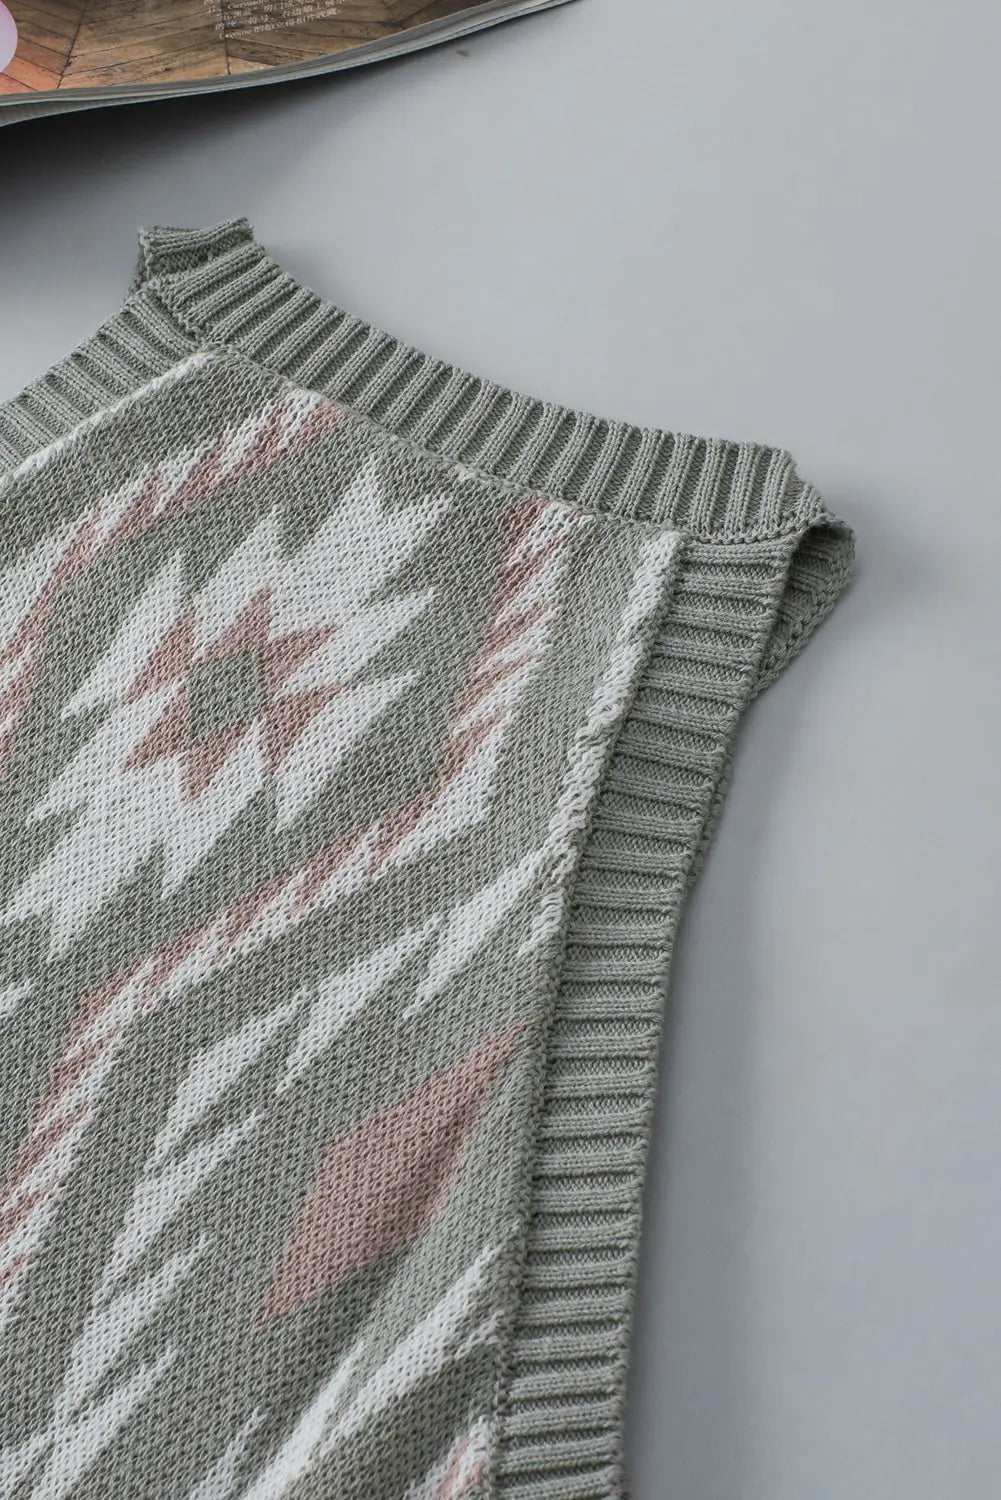 Laurel green western tribal aztec pattern knit sweater tank - tops